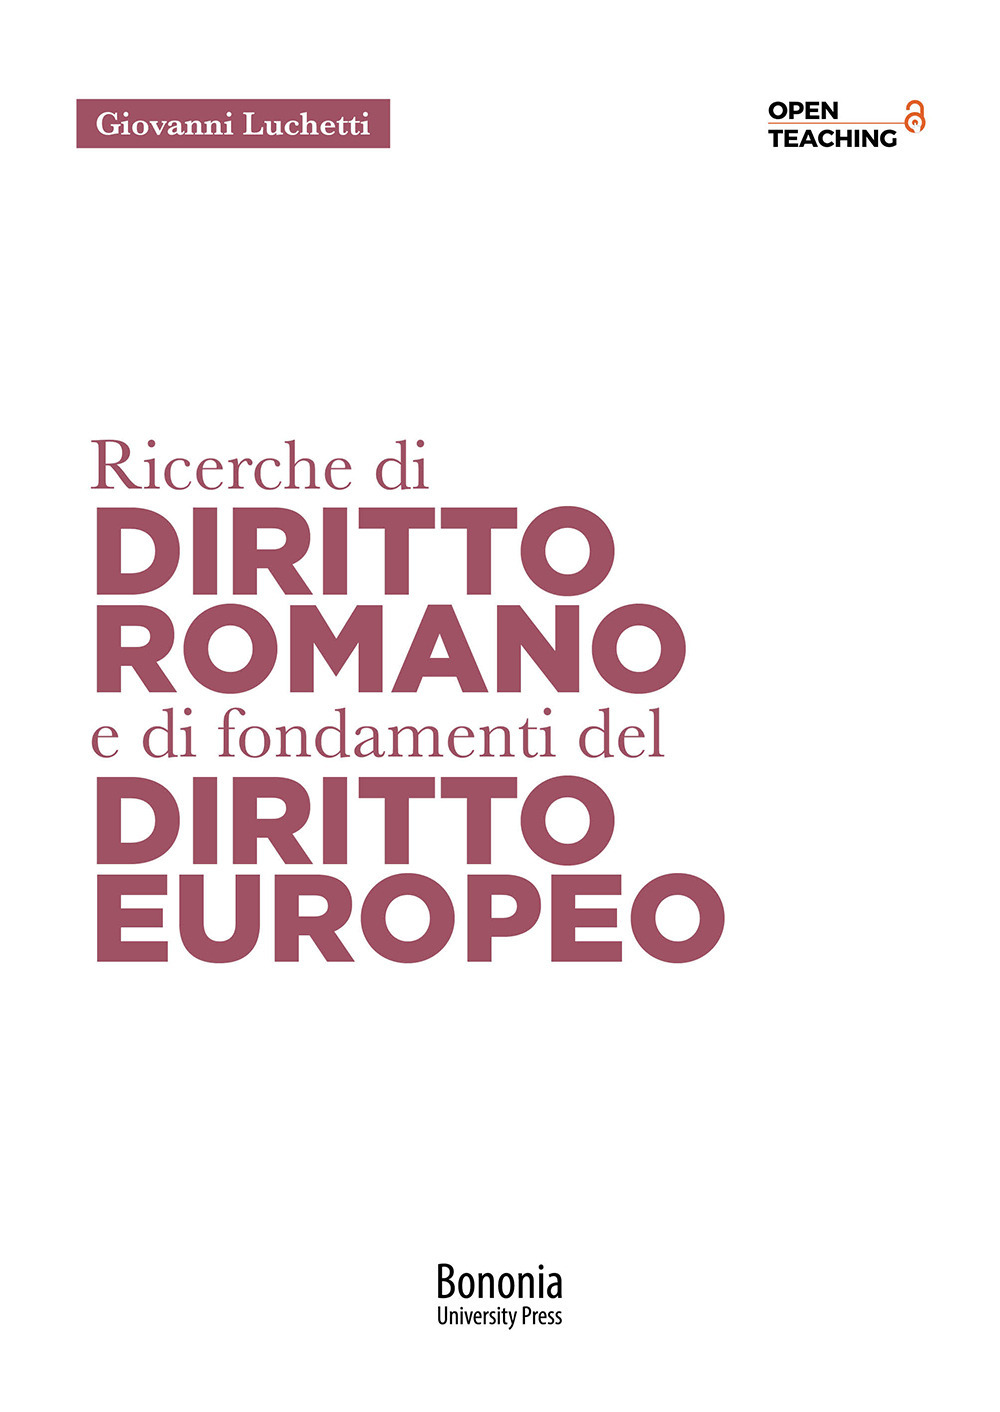 Ricerche di diritto romano e di fondamenti di diritto europeo